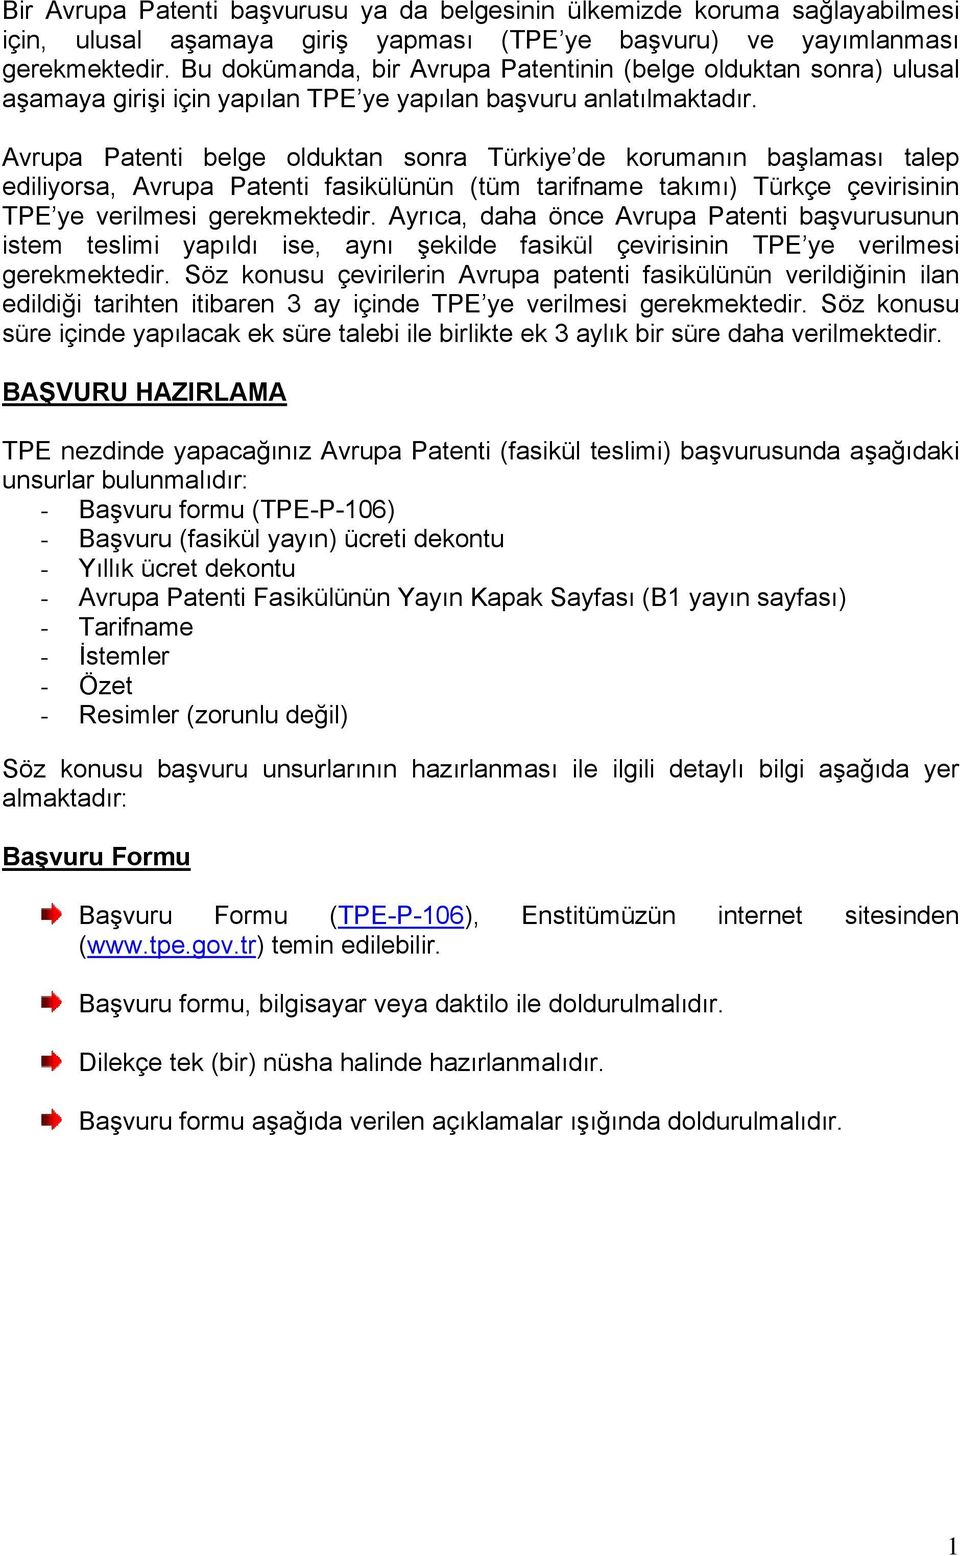 Avrupa Patenti belge olduktan sonra Türkiye de korumanın başlaması talep ediliyorsa, Avrupa Patenti fasikülünün (tüm tarifname takımı) Türkçe çevirisinin TPE ye verilmesi gerekmektedir.